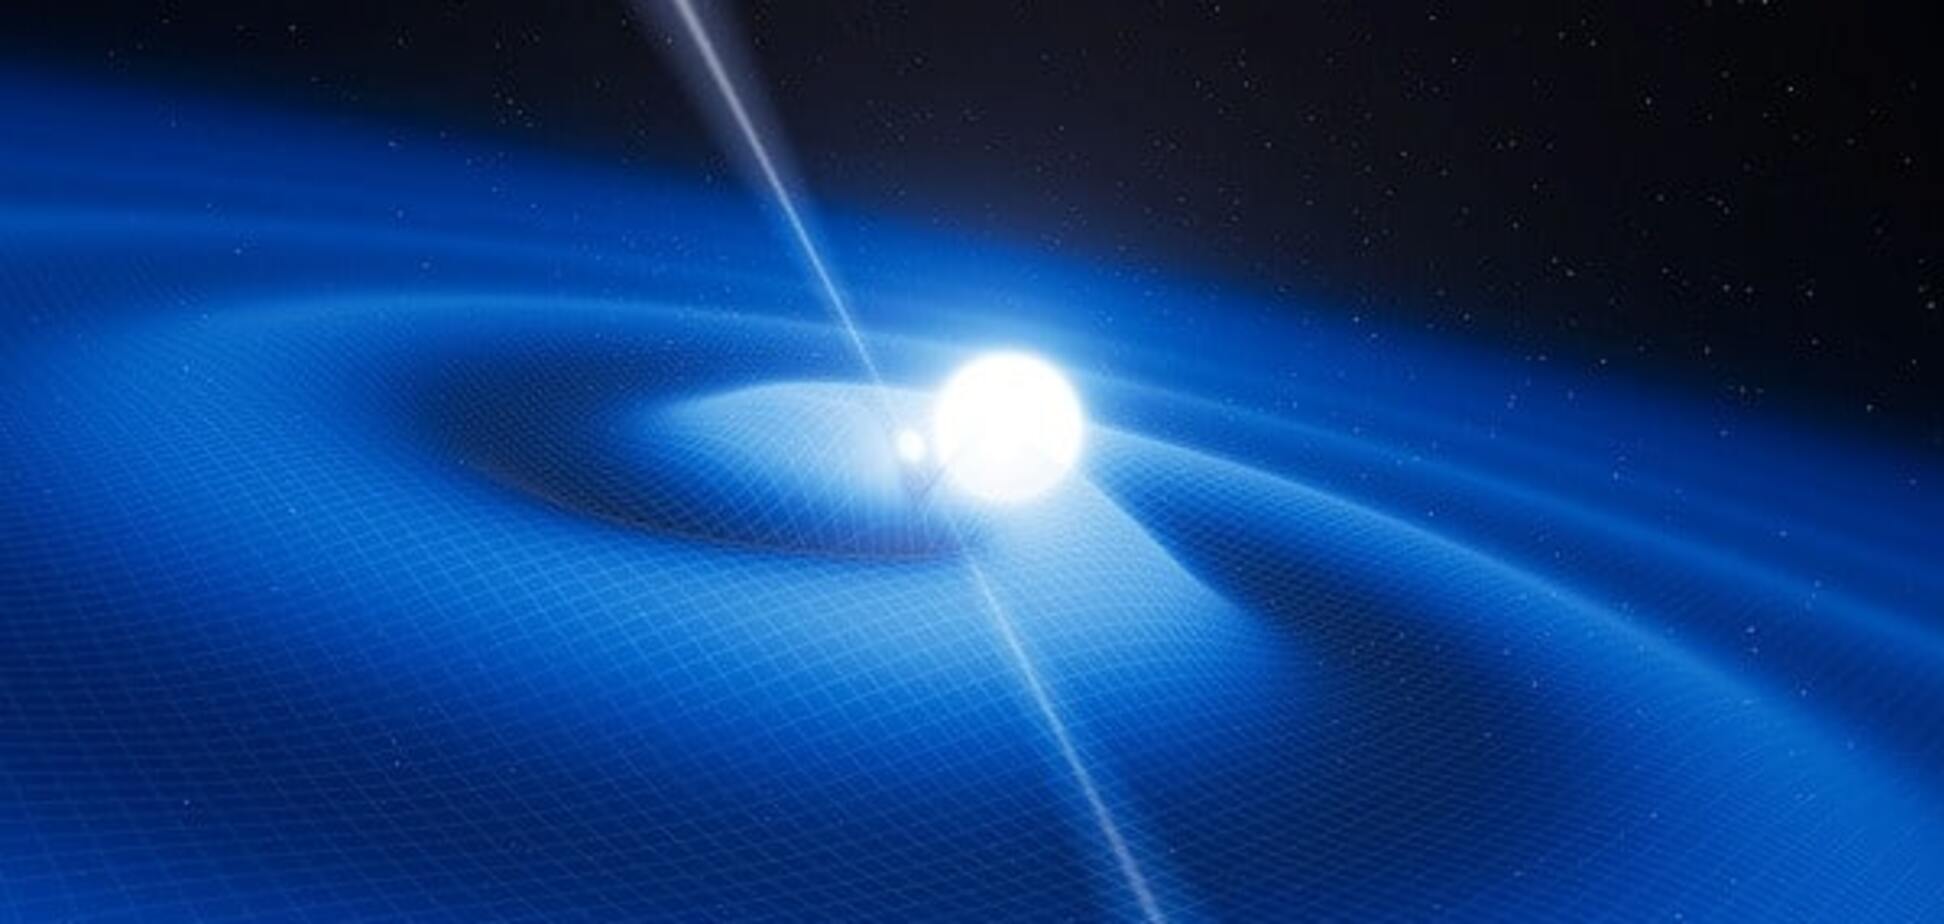 Ученые обнаружили волны пространства-времени: опубликовано видео